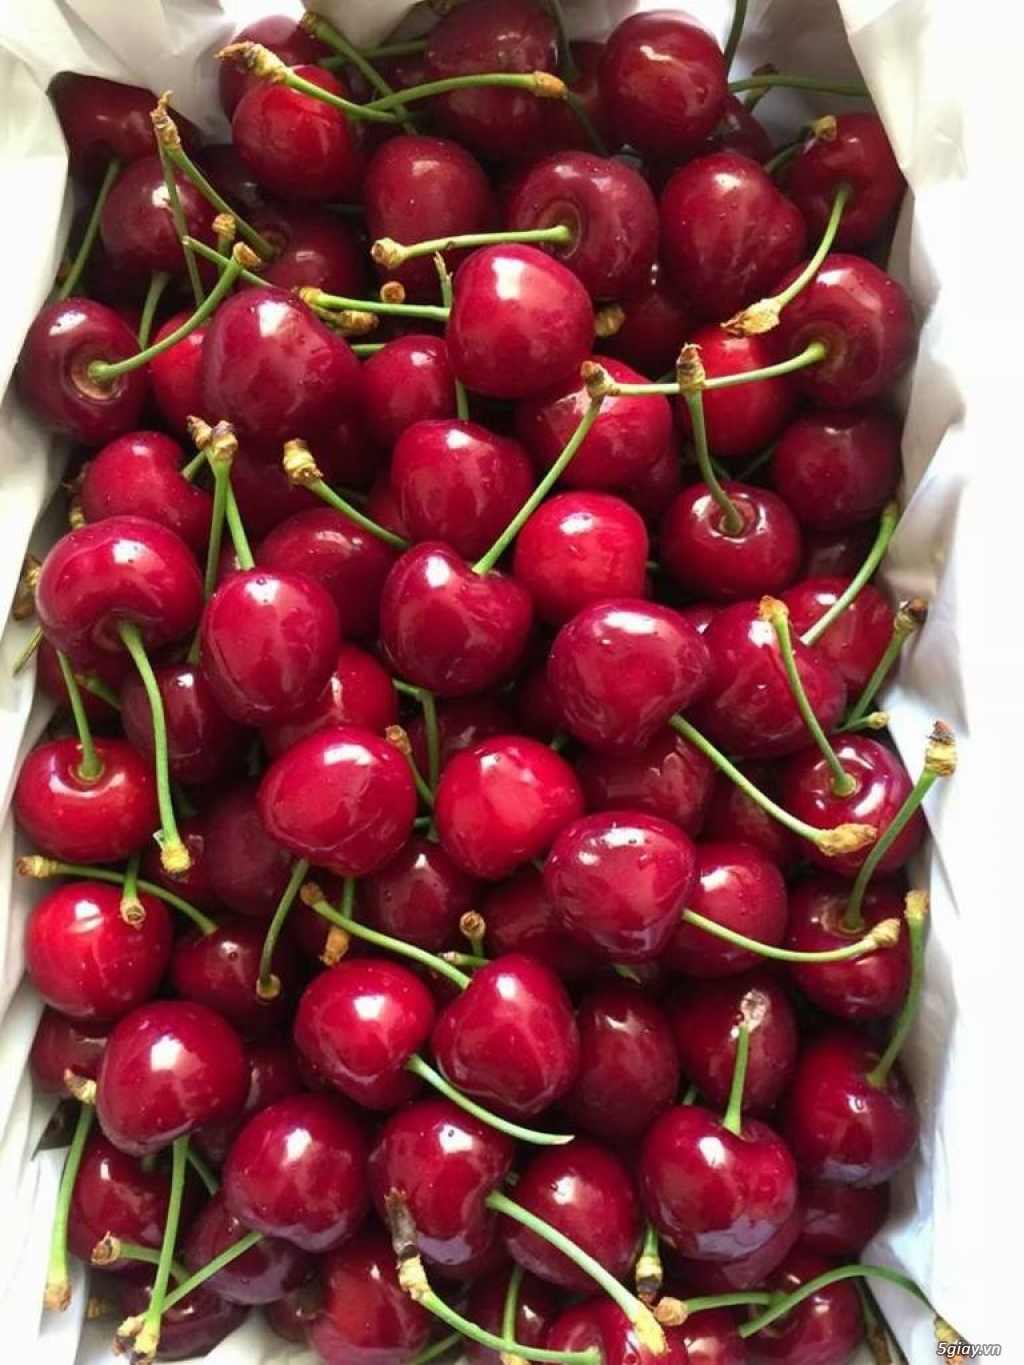 Cherry Mỹ, Canada - bán lẻ rẻ như bán buôn!